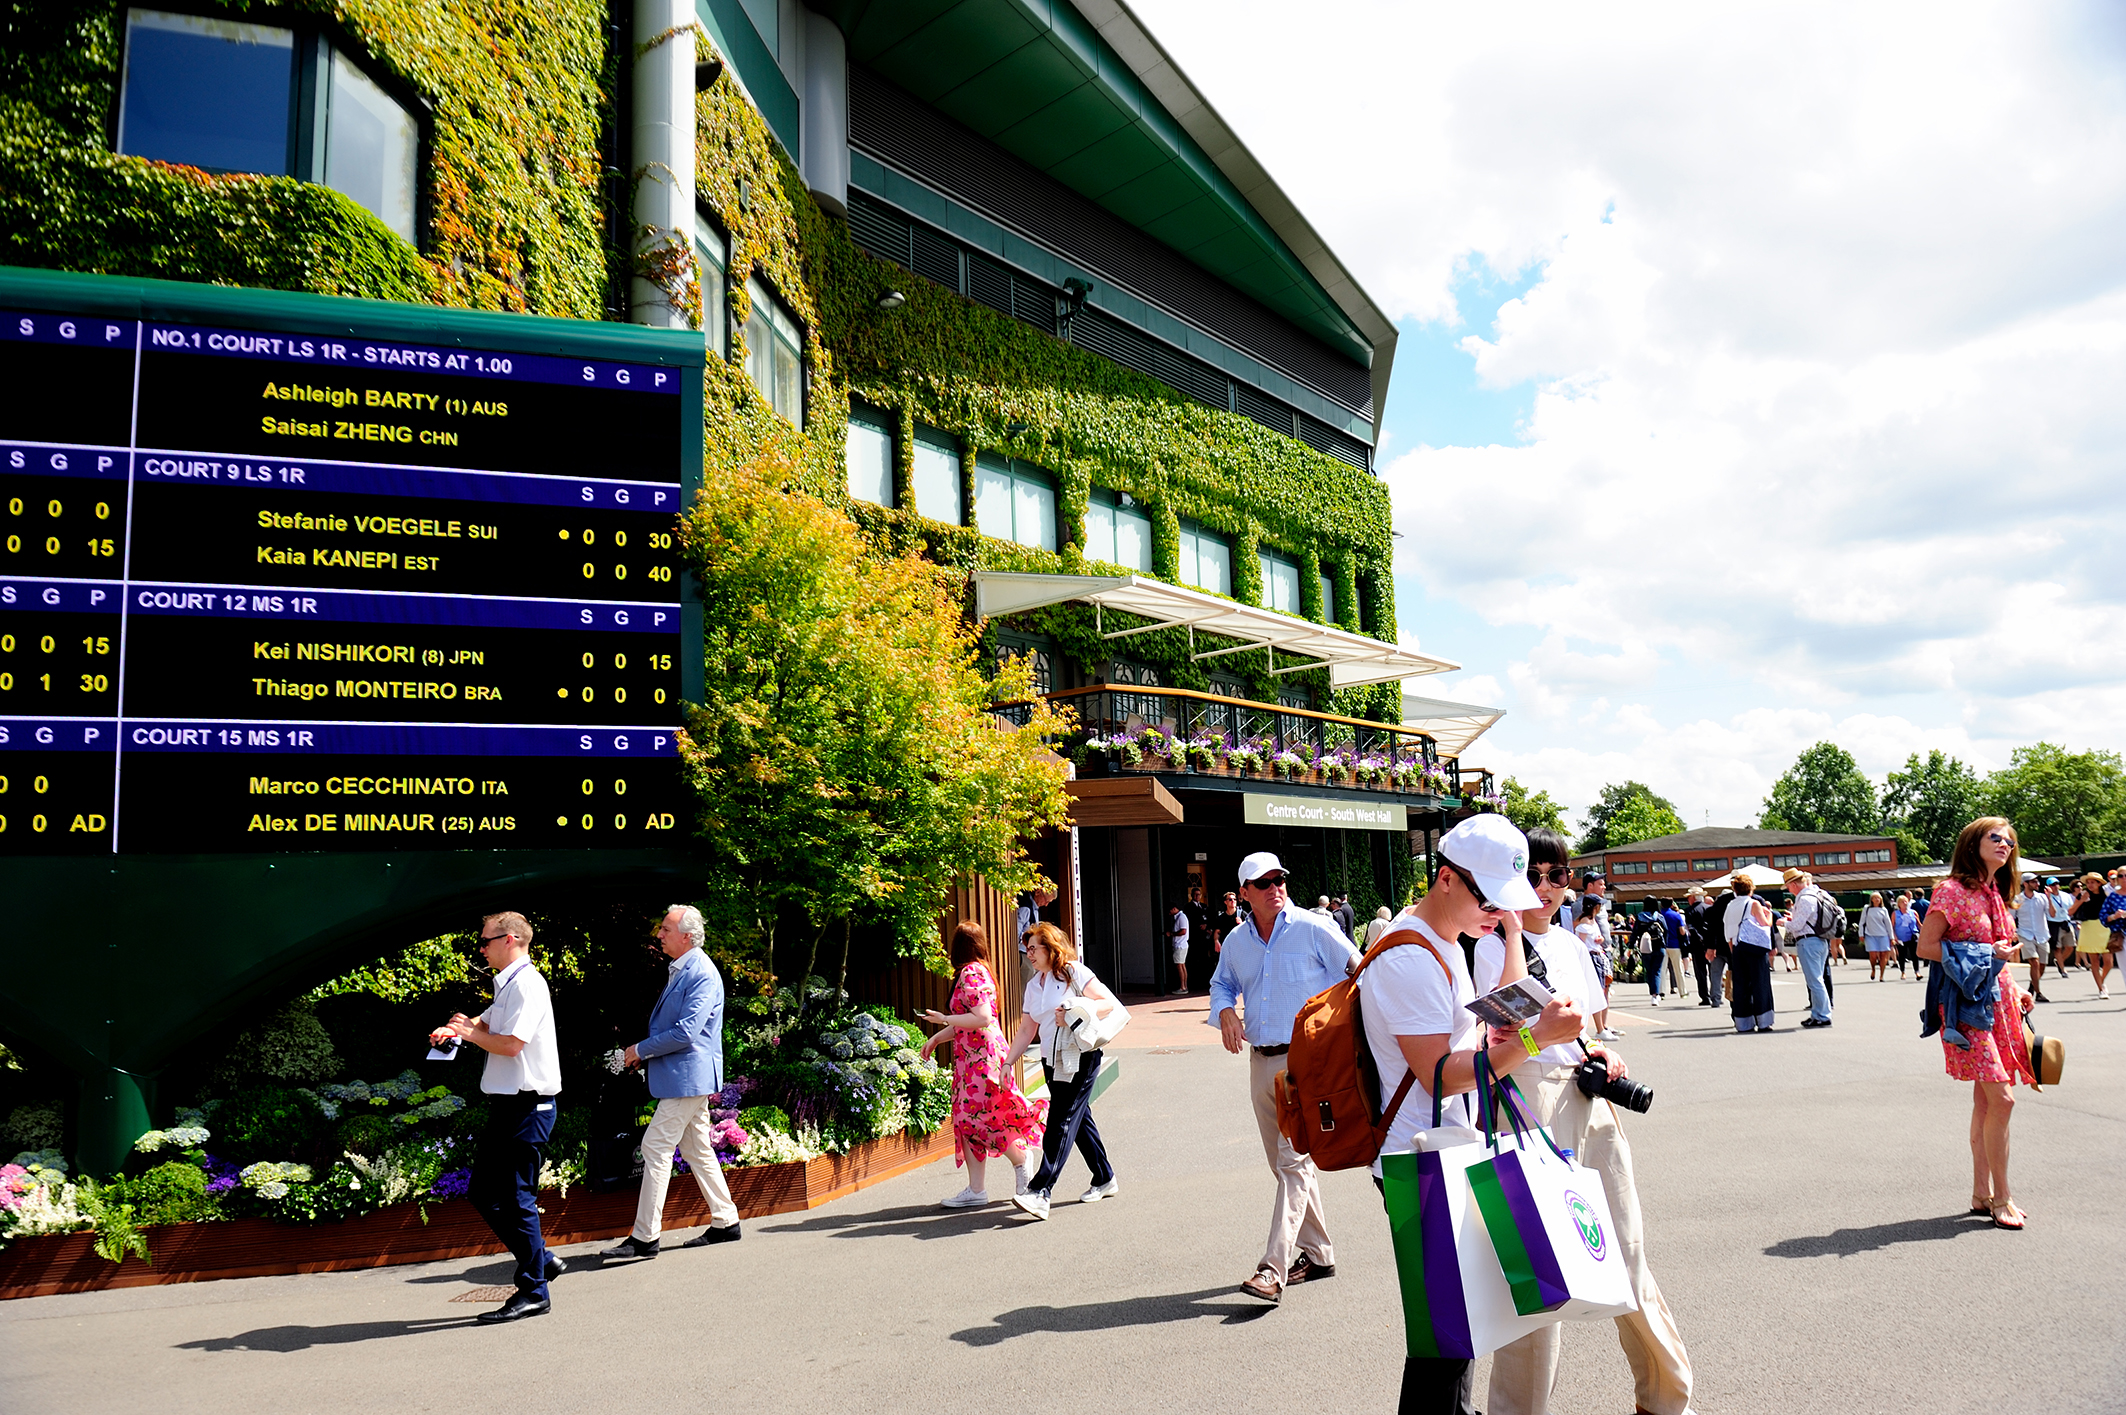 PTSG provides best views at Wimbledon